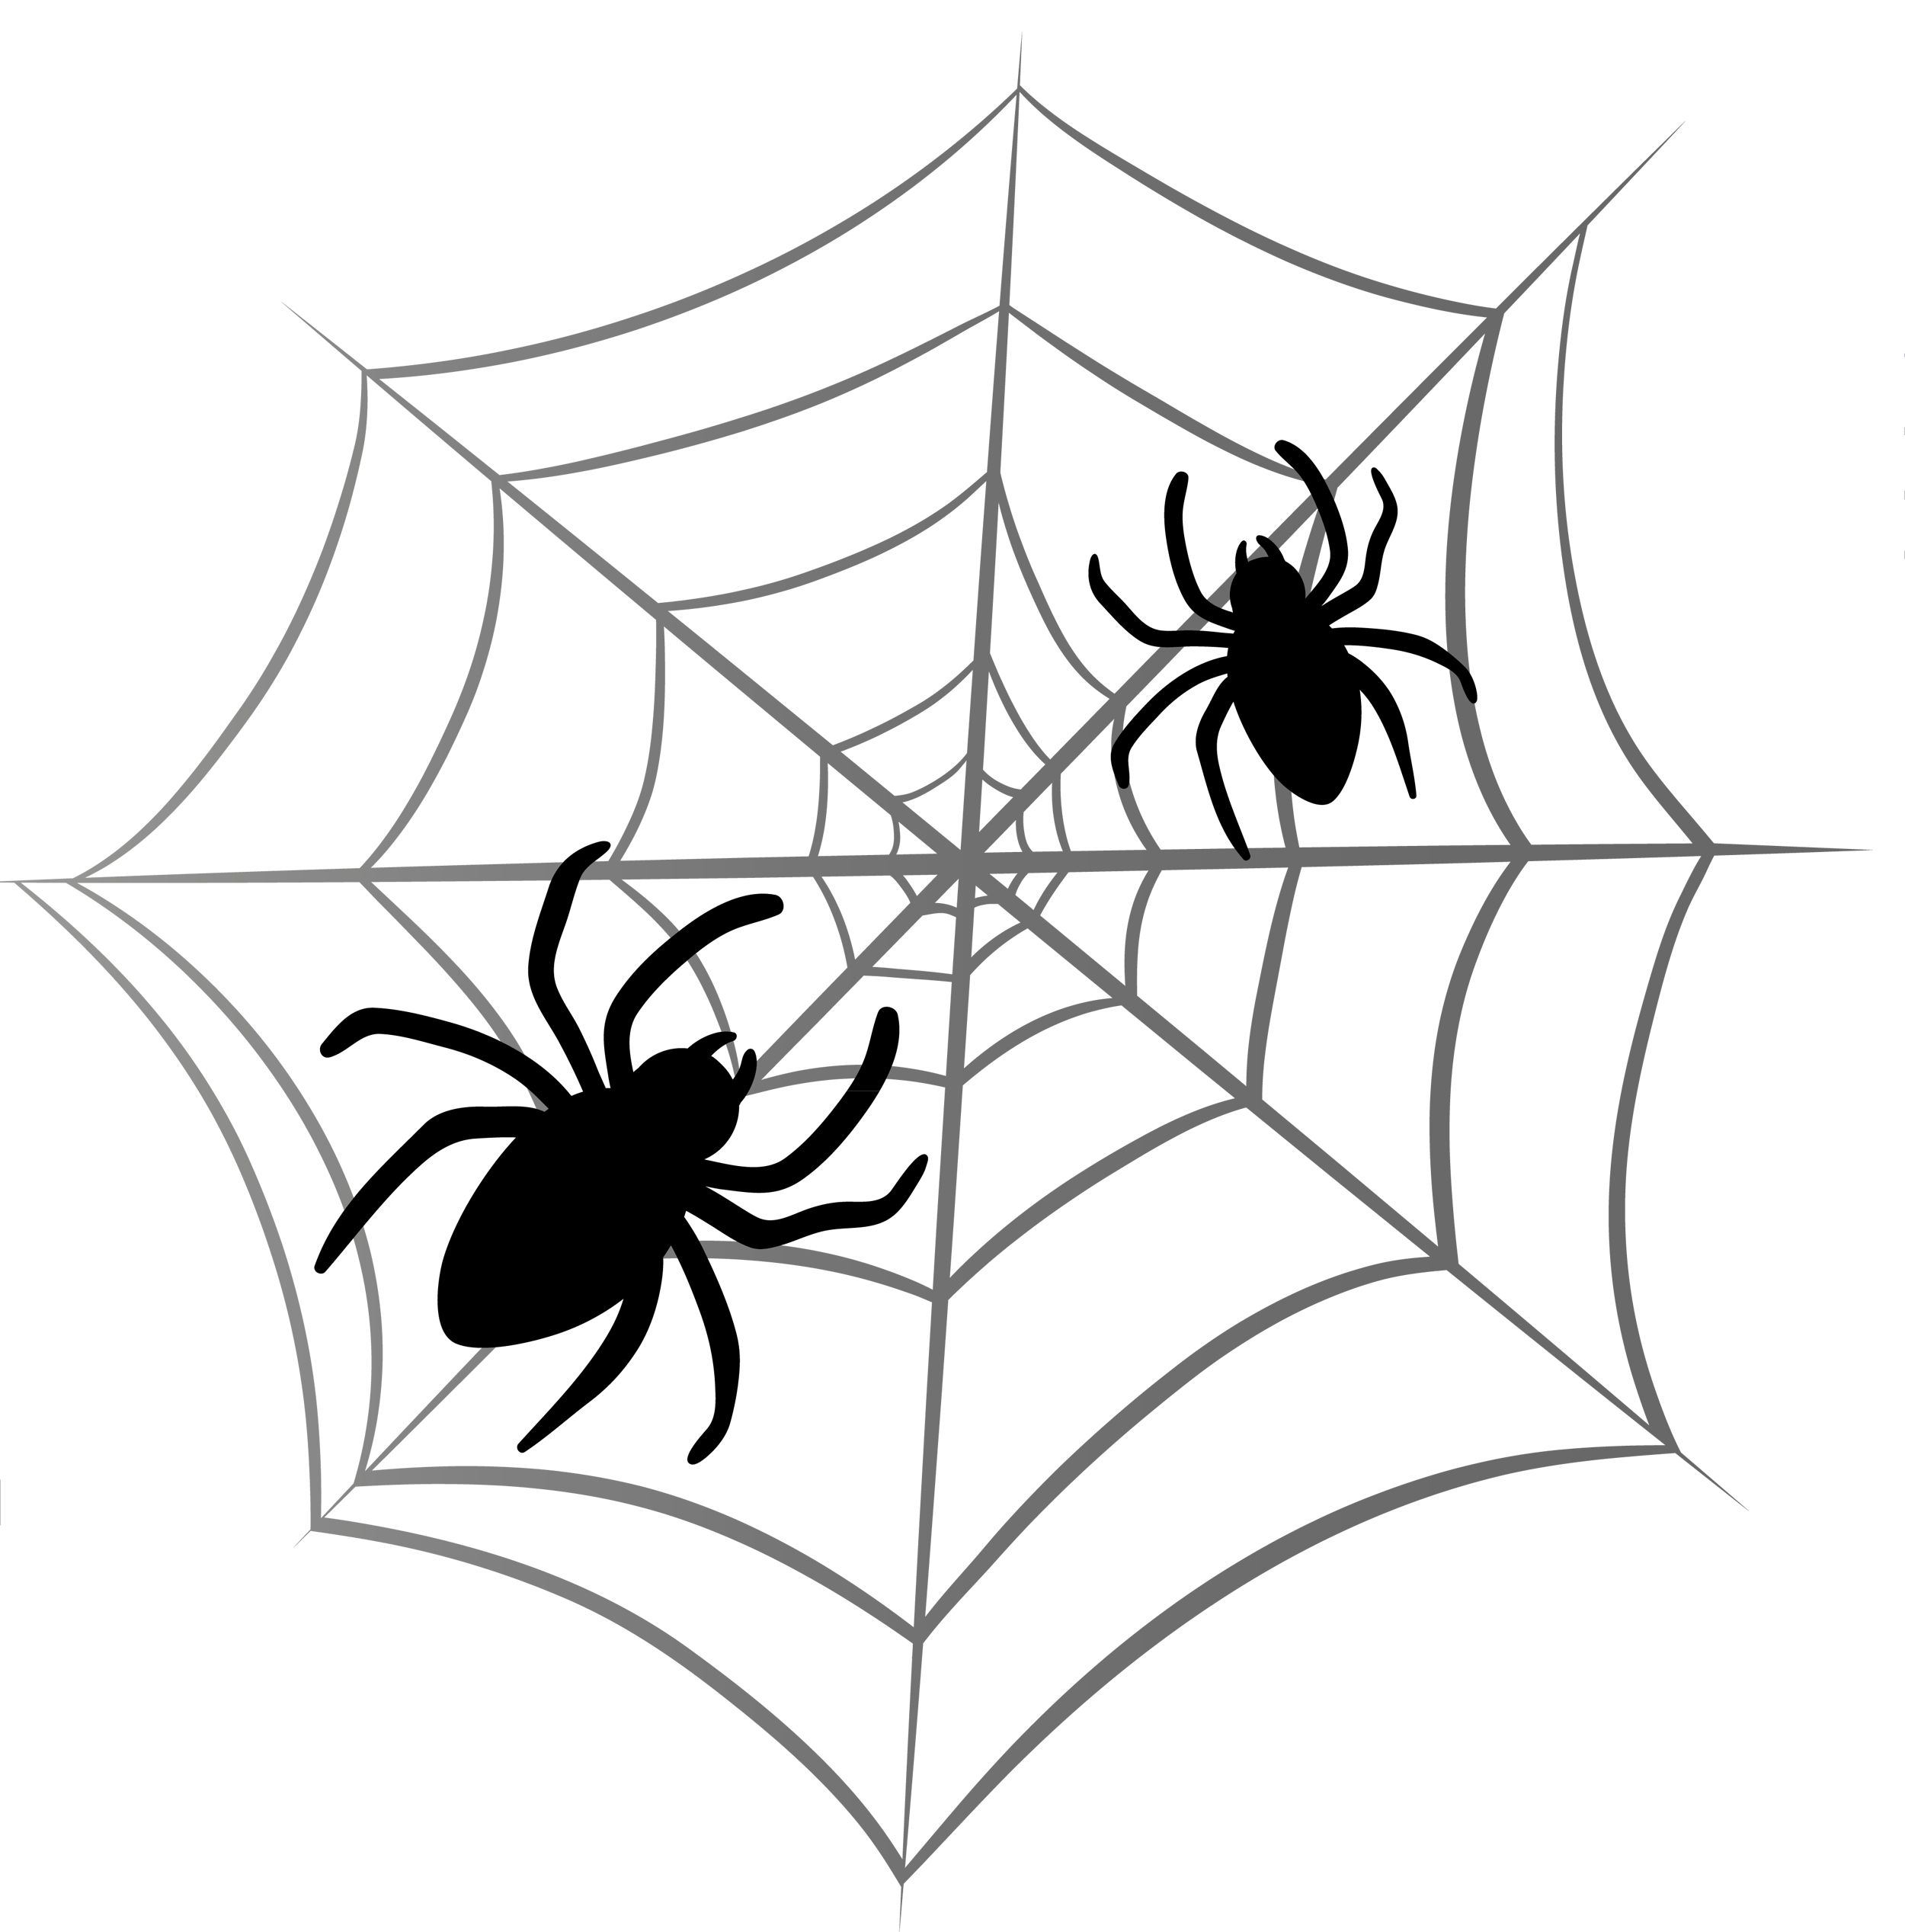 Halloween Spider Clipart